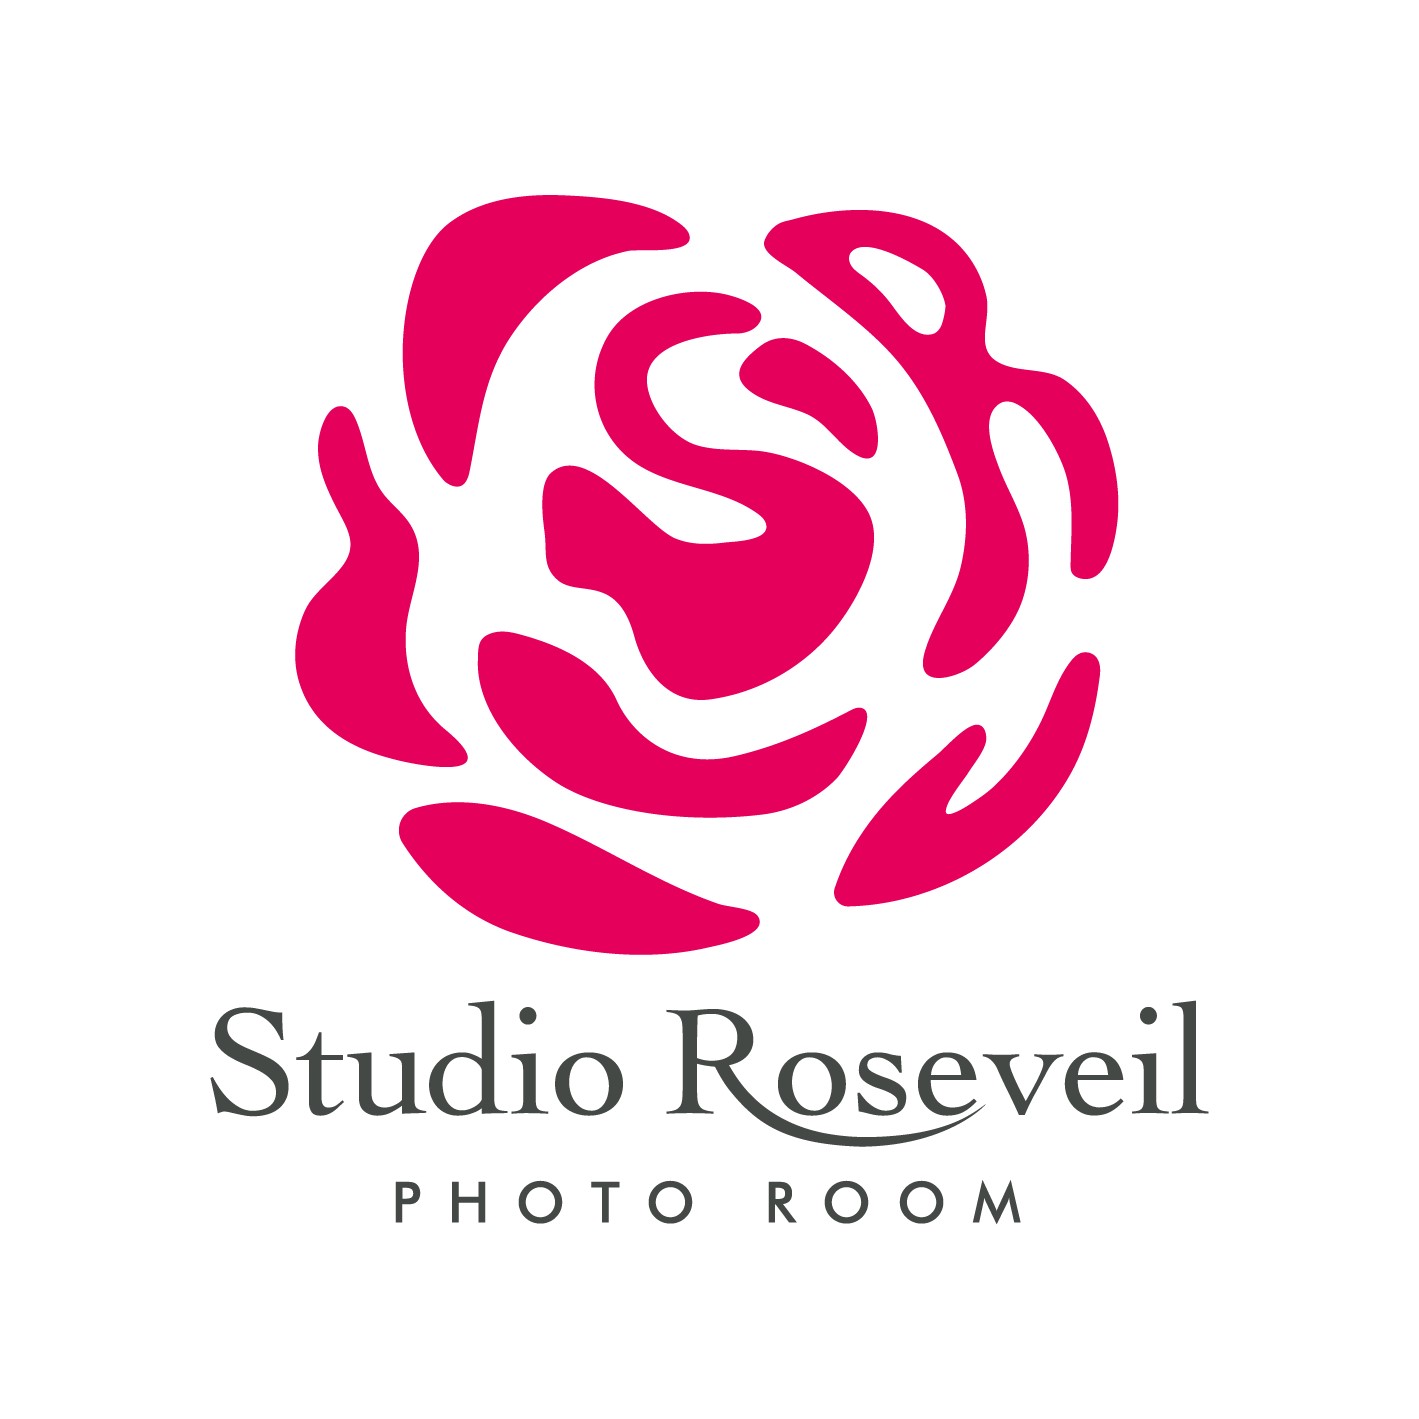 シルクリバー株式会社（Studio Roseveil）